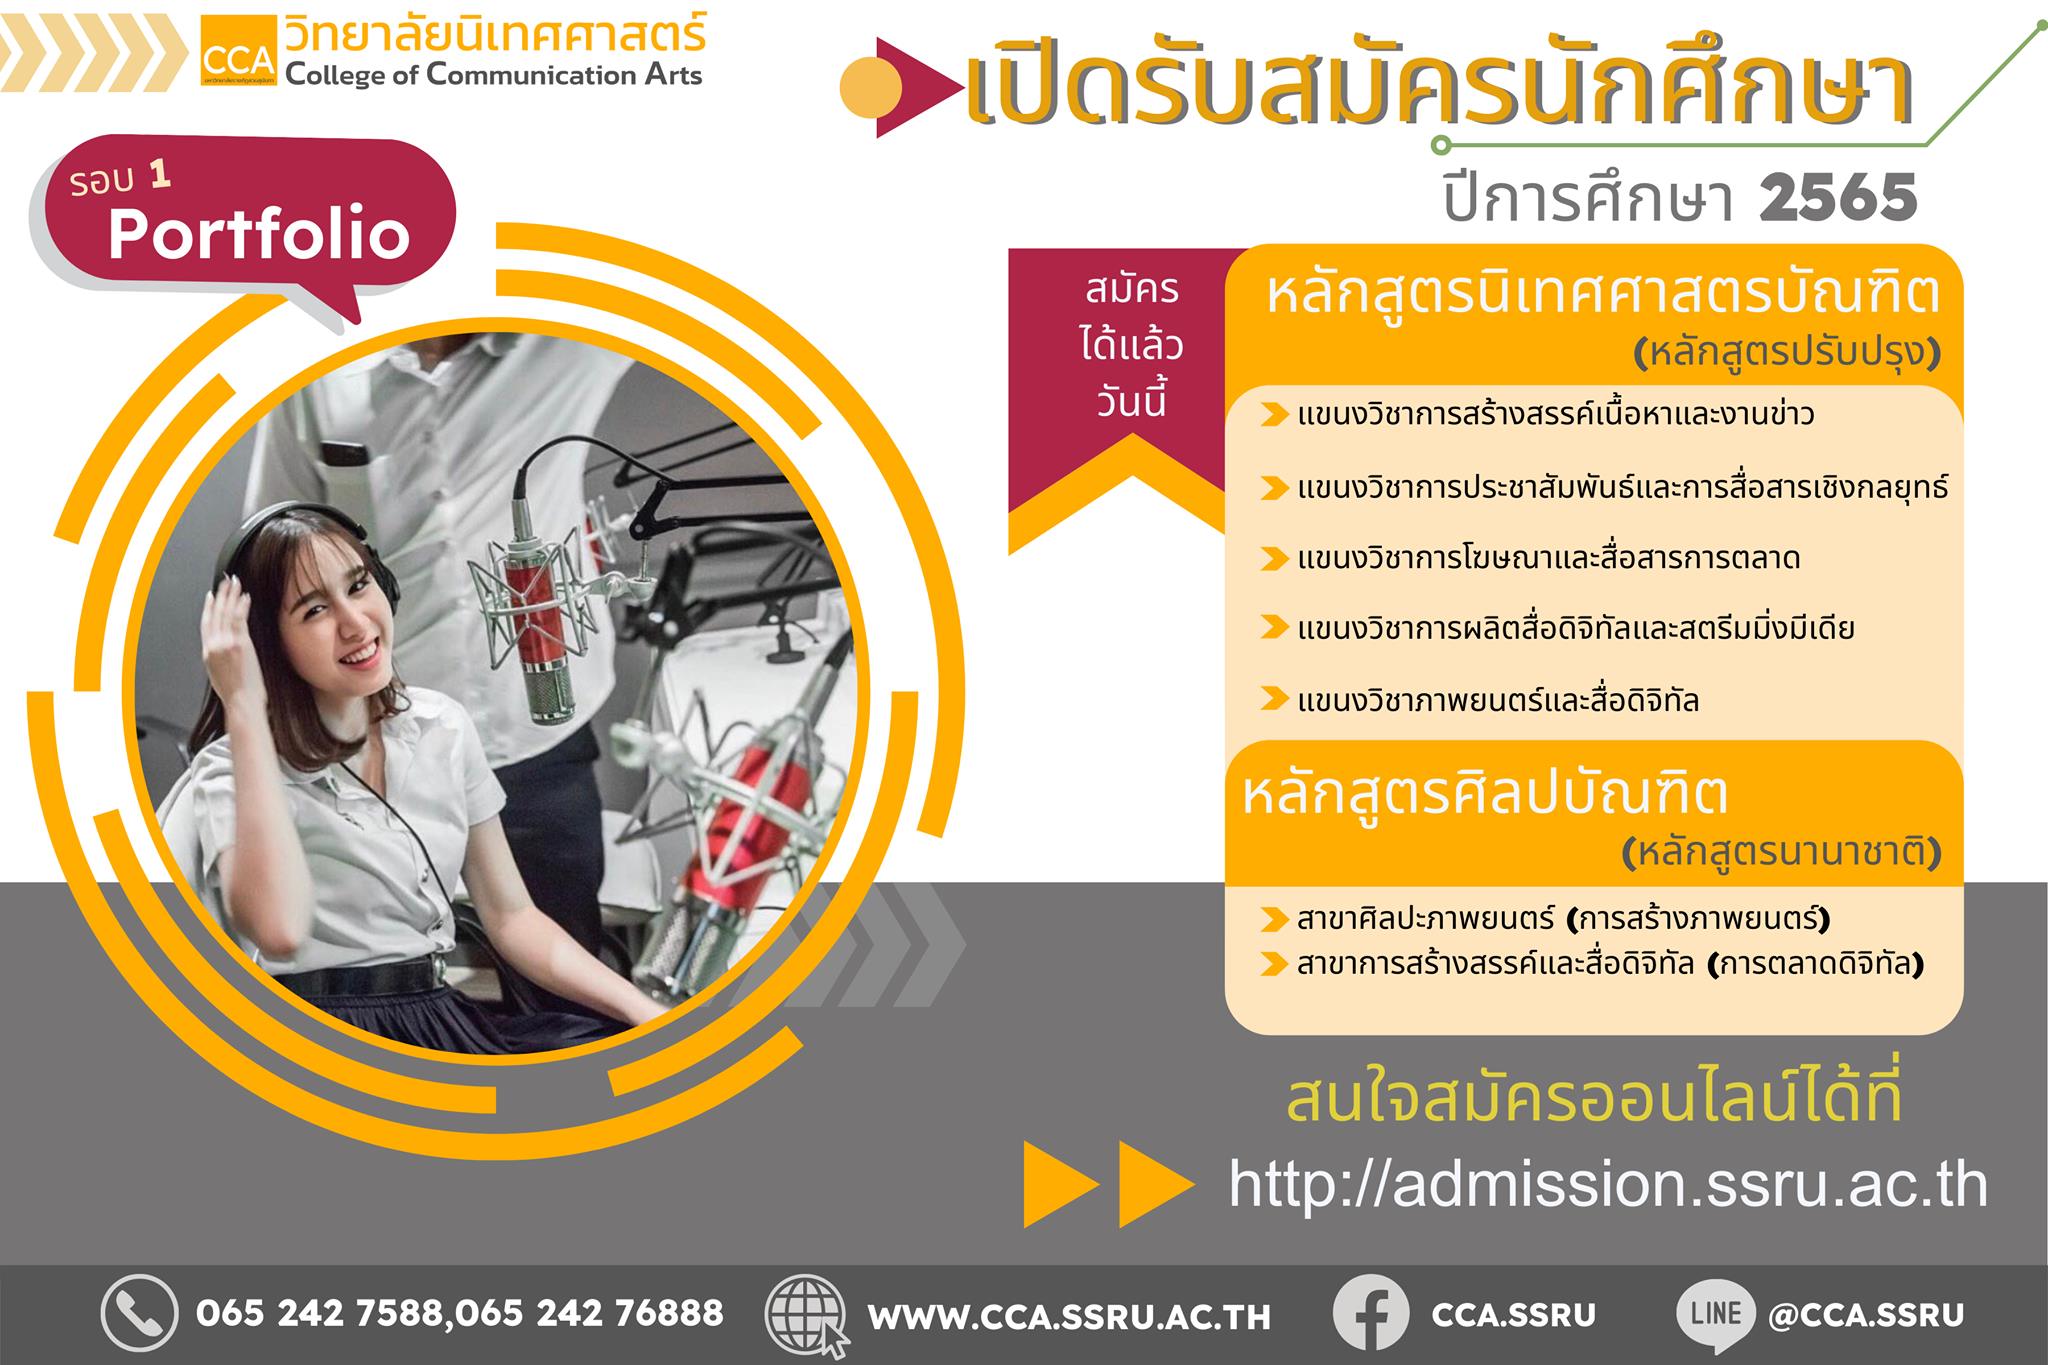 ตอบโจทย์อนาคต! วิทยาลัยนิเทศศาสตร์ สวนสุนันทา เปิดรับเรียนต่อปริญญาตรี ปี 65 ปรับปรุงใหม่ครบถ้วนทั้งหลักสูตรภาษาไทยและนานาชาติ